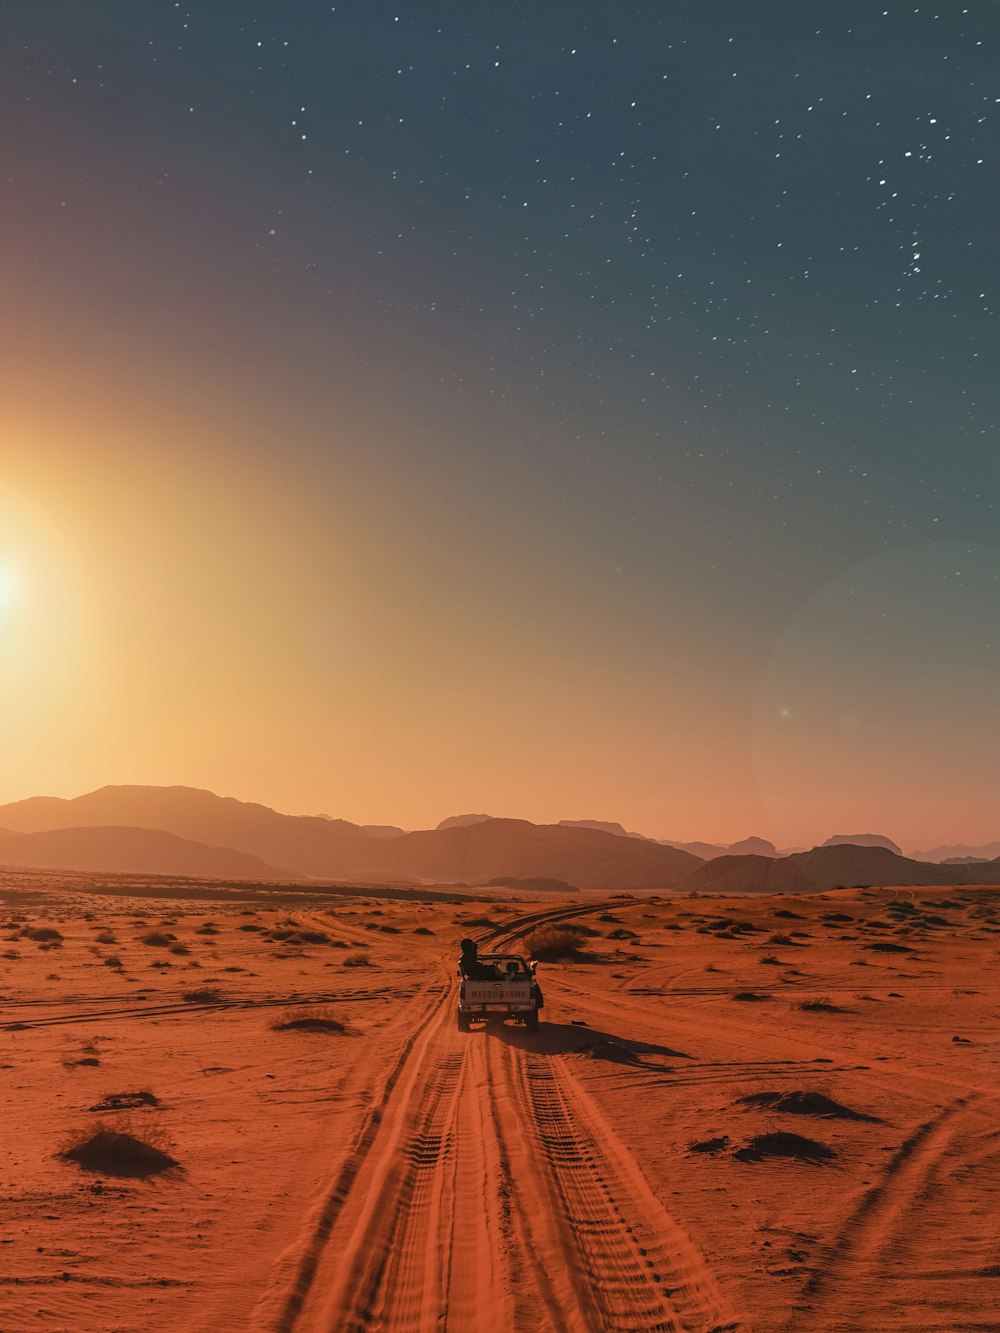 desert mountains sunrise